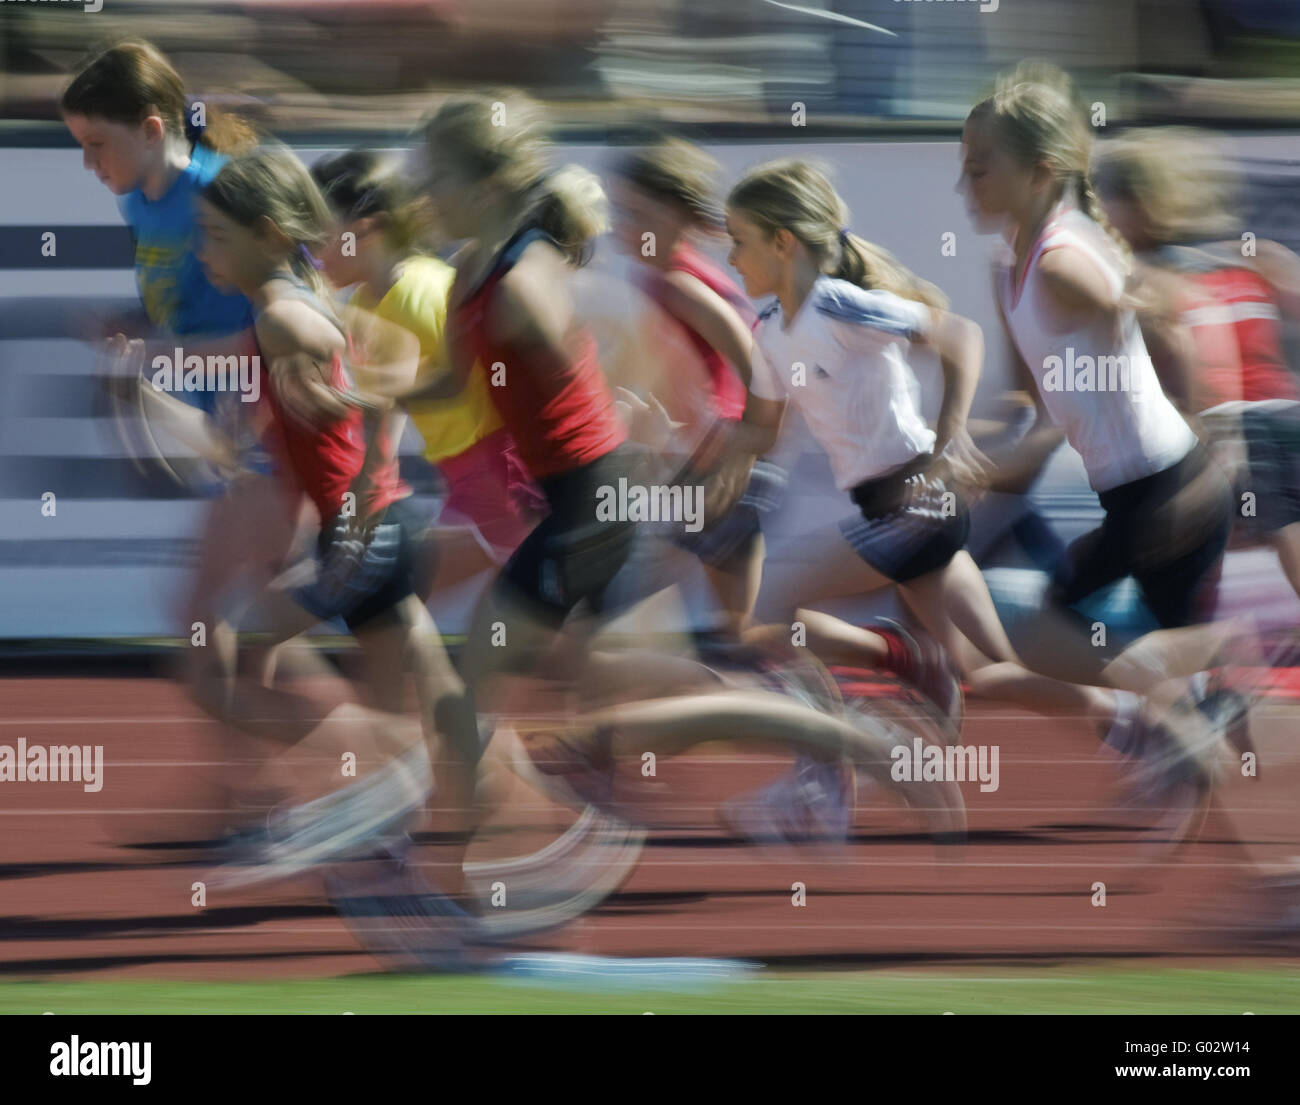 Young girls running 600m Stock Photo